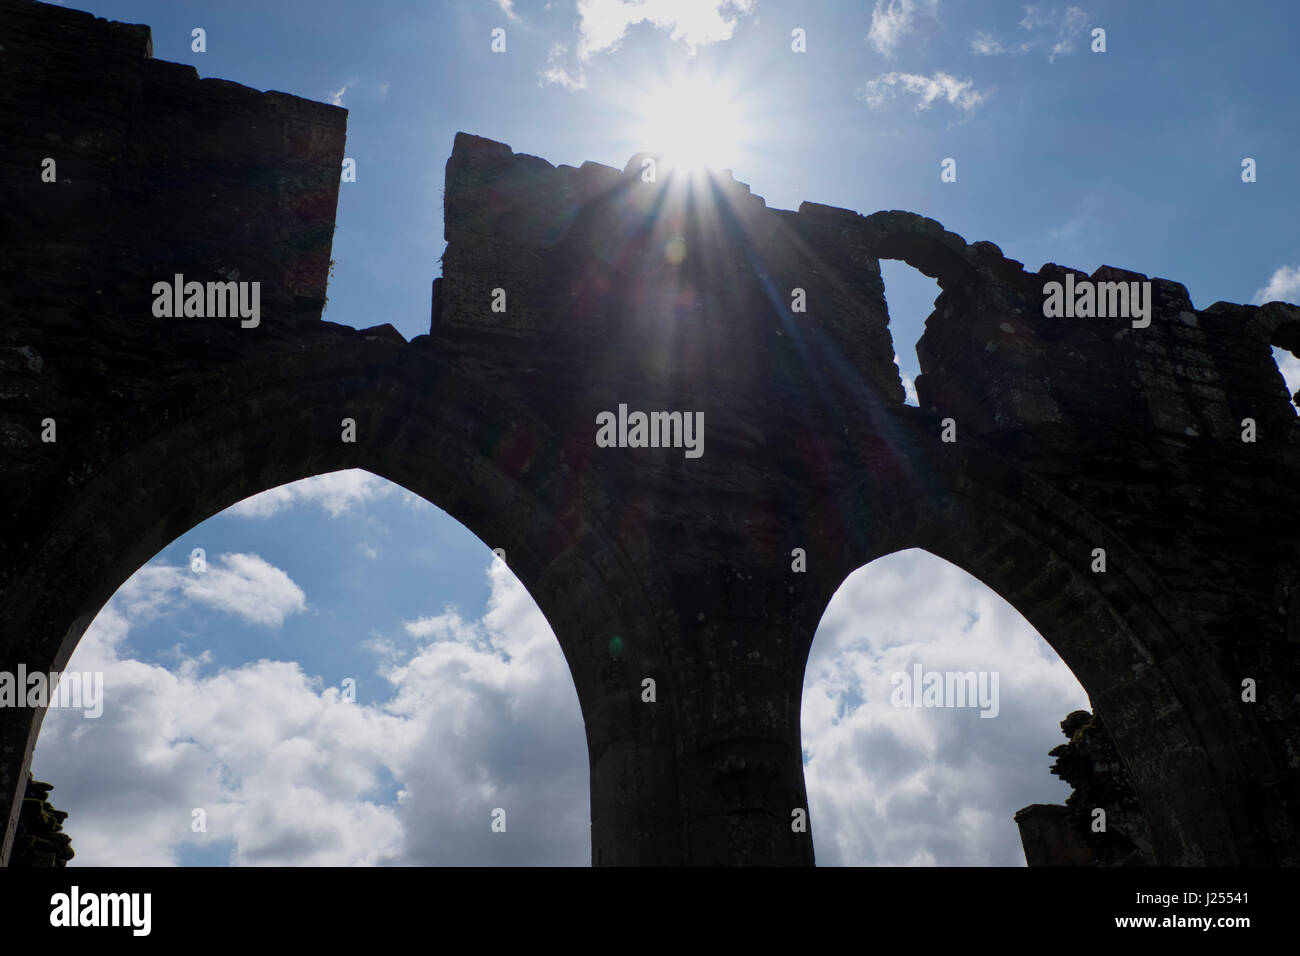 Website des mittelalterlichen Llanthony Abbey, des Zisterzienserordens der Mönche bei der Brecon Beacons National Park, Wales, UK Stockfoto